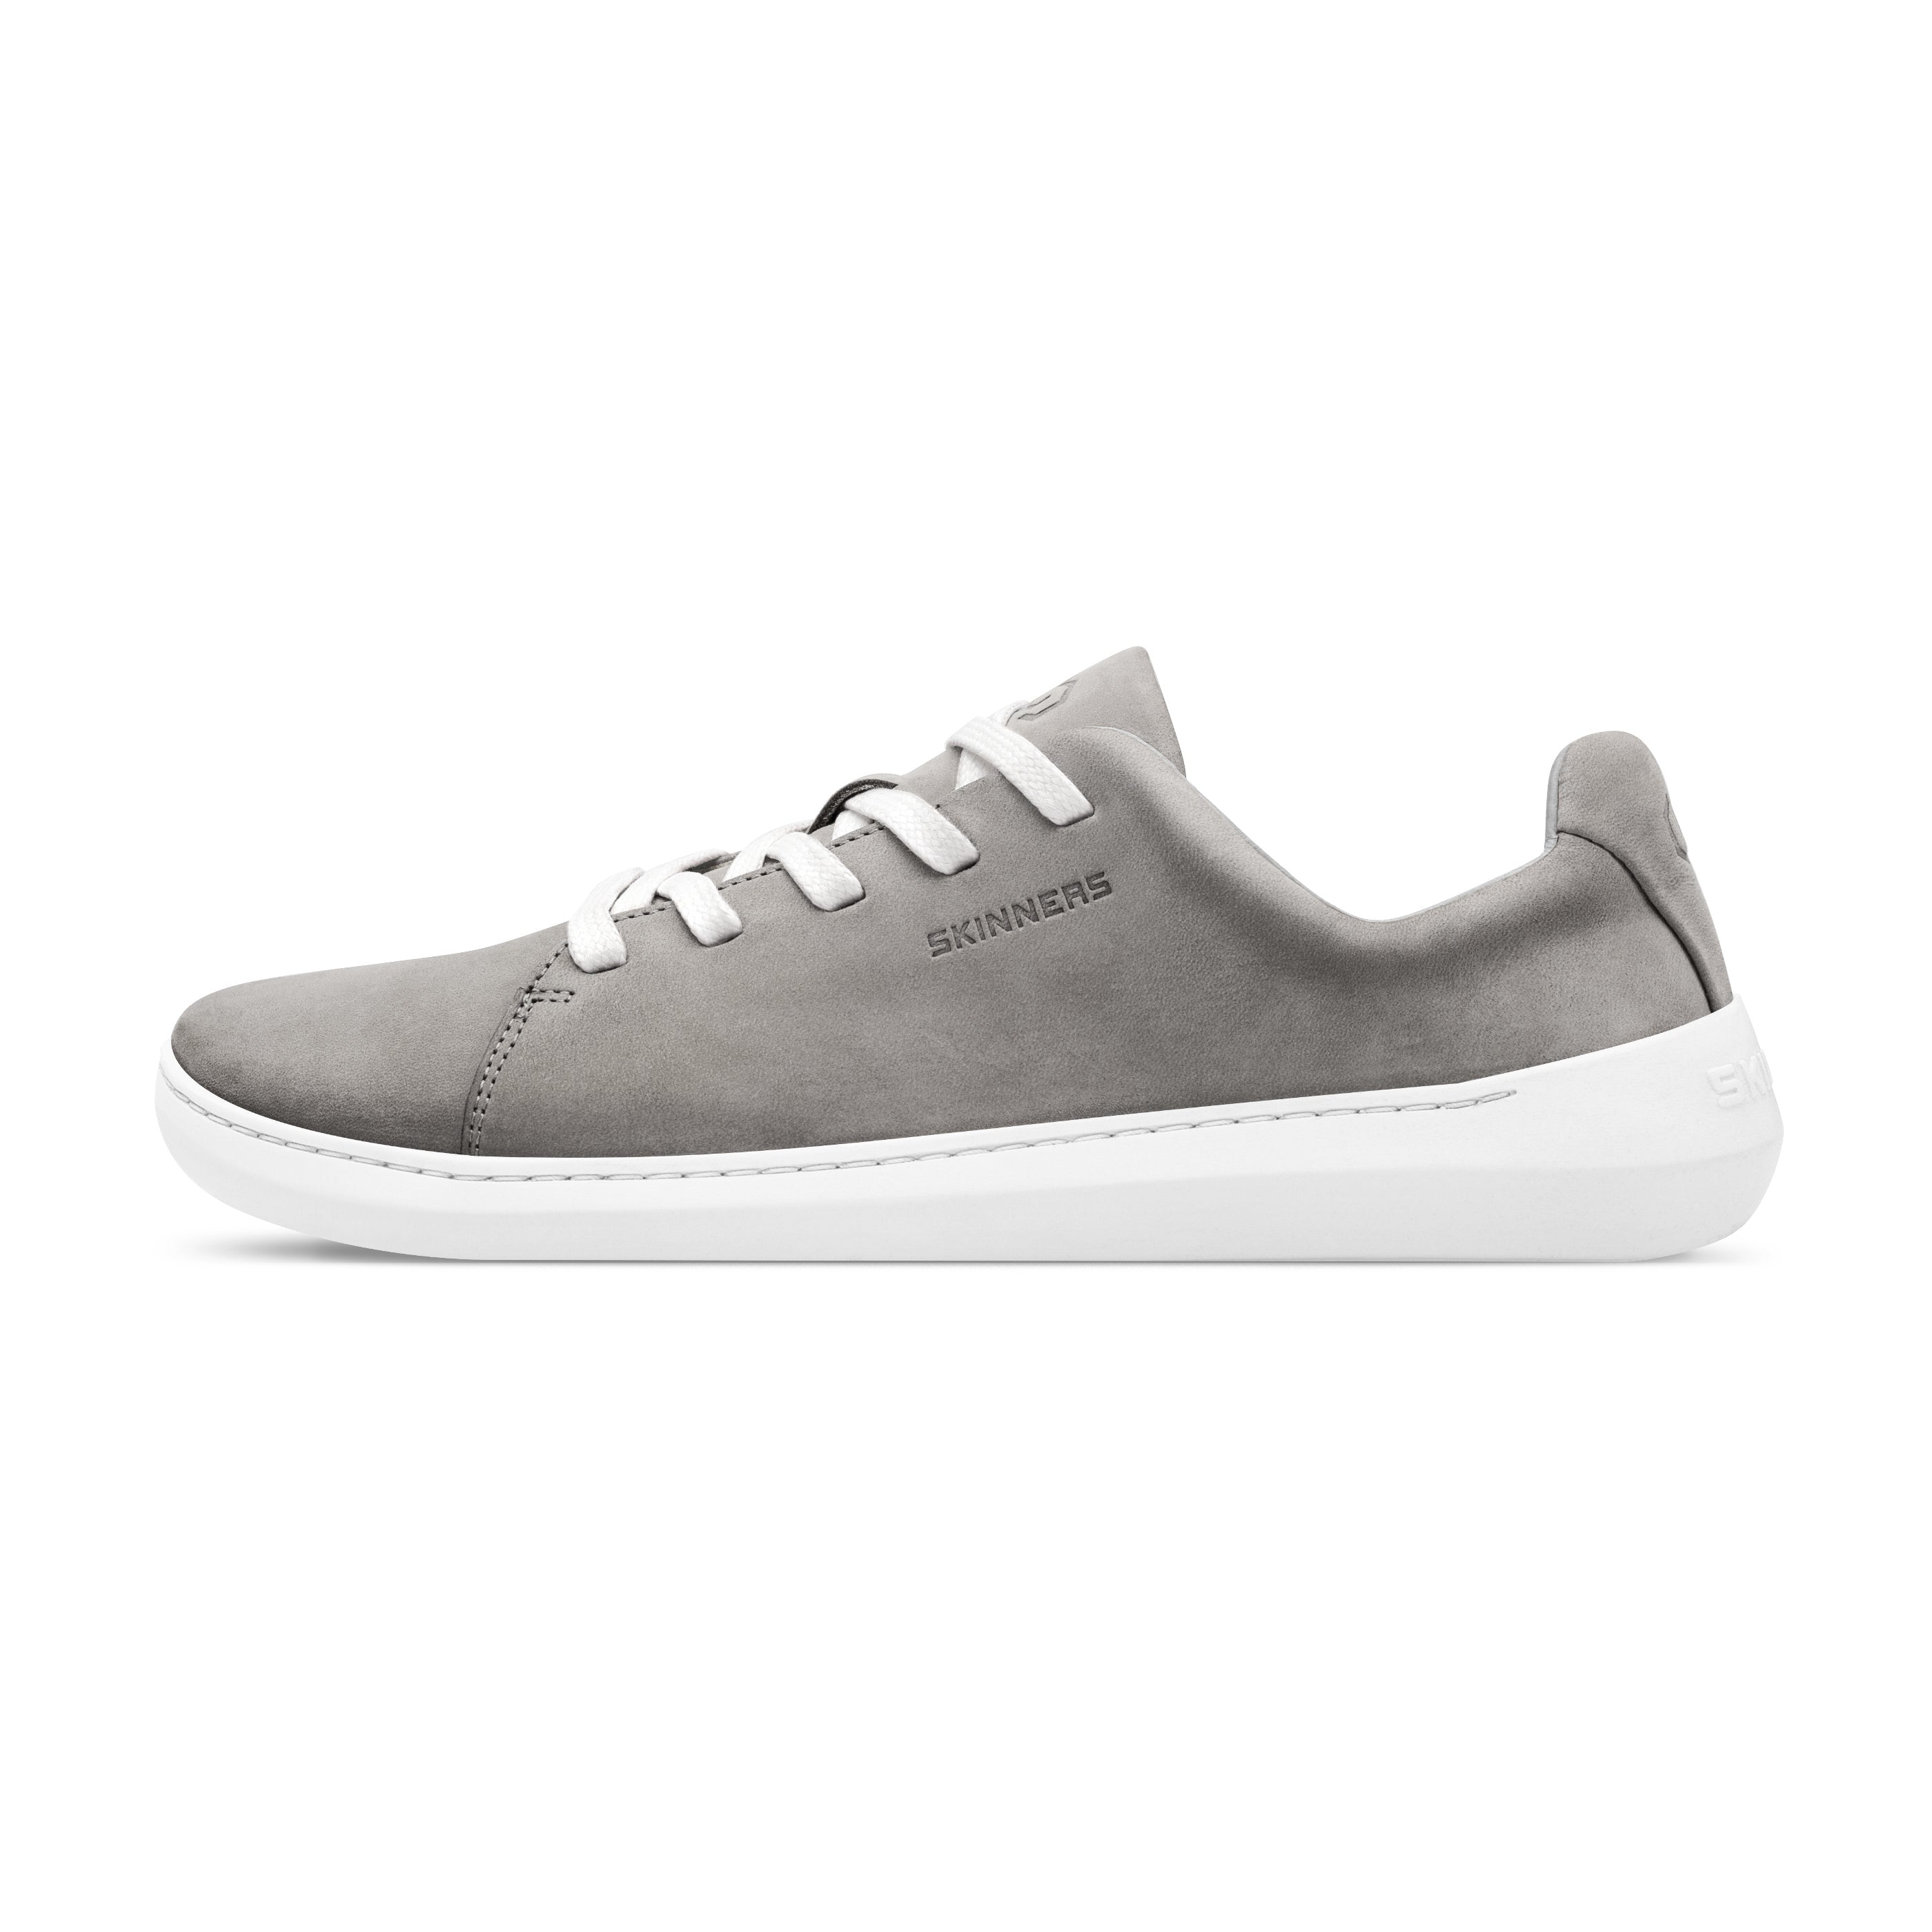 Mærkbare Walker barfods sneakers til kvinder og mænd i farven grey / white, yderside